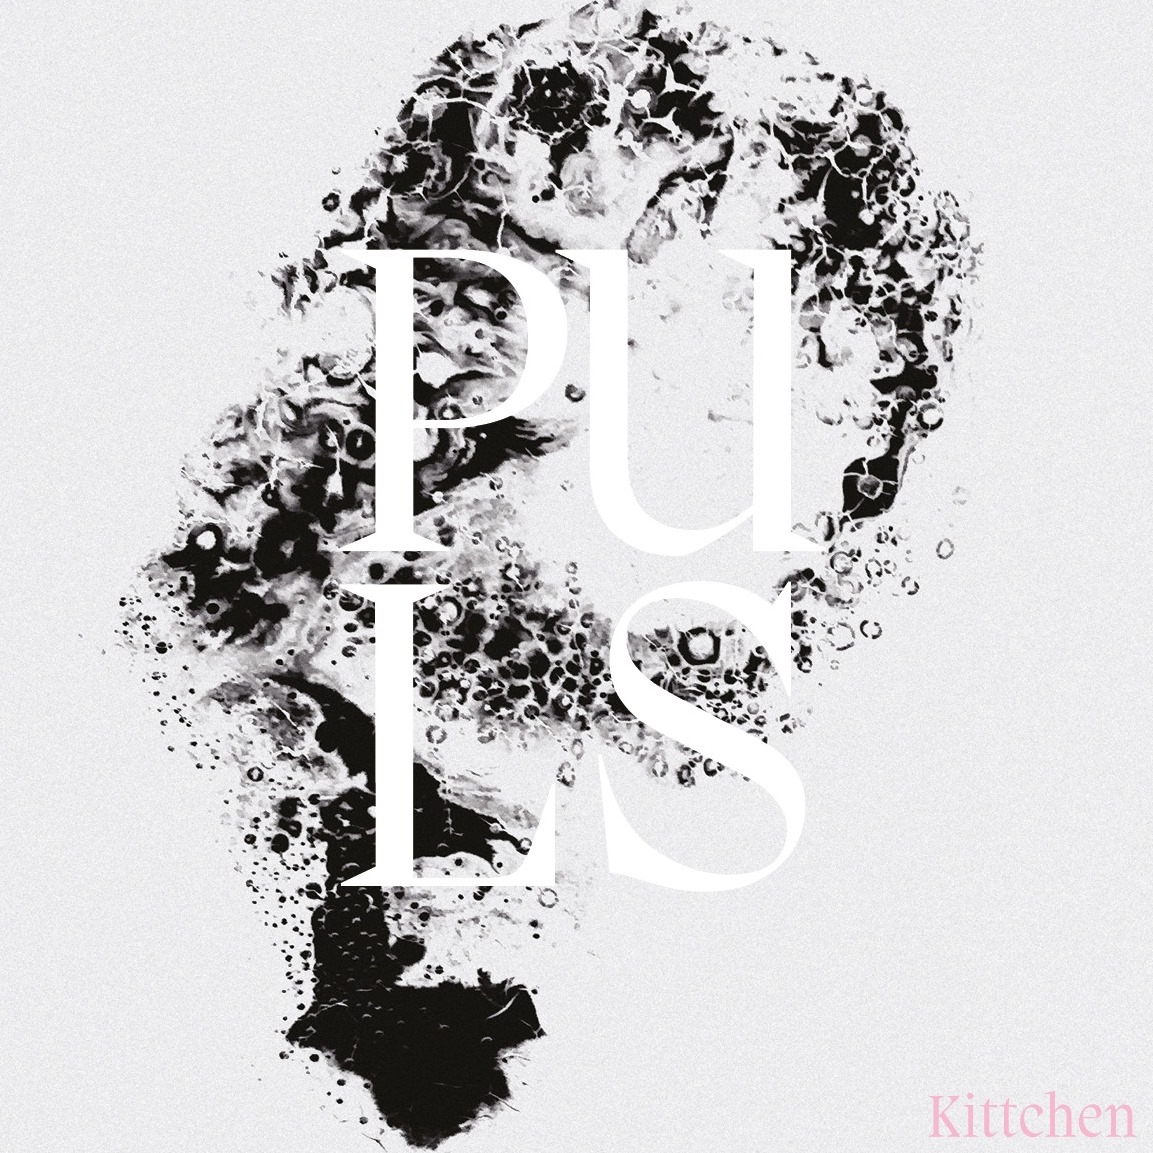 Kittchen - Puls